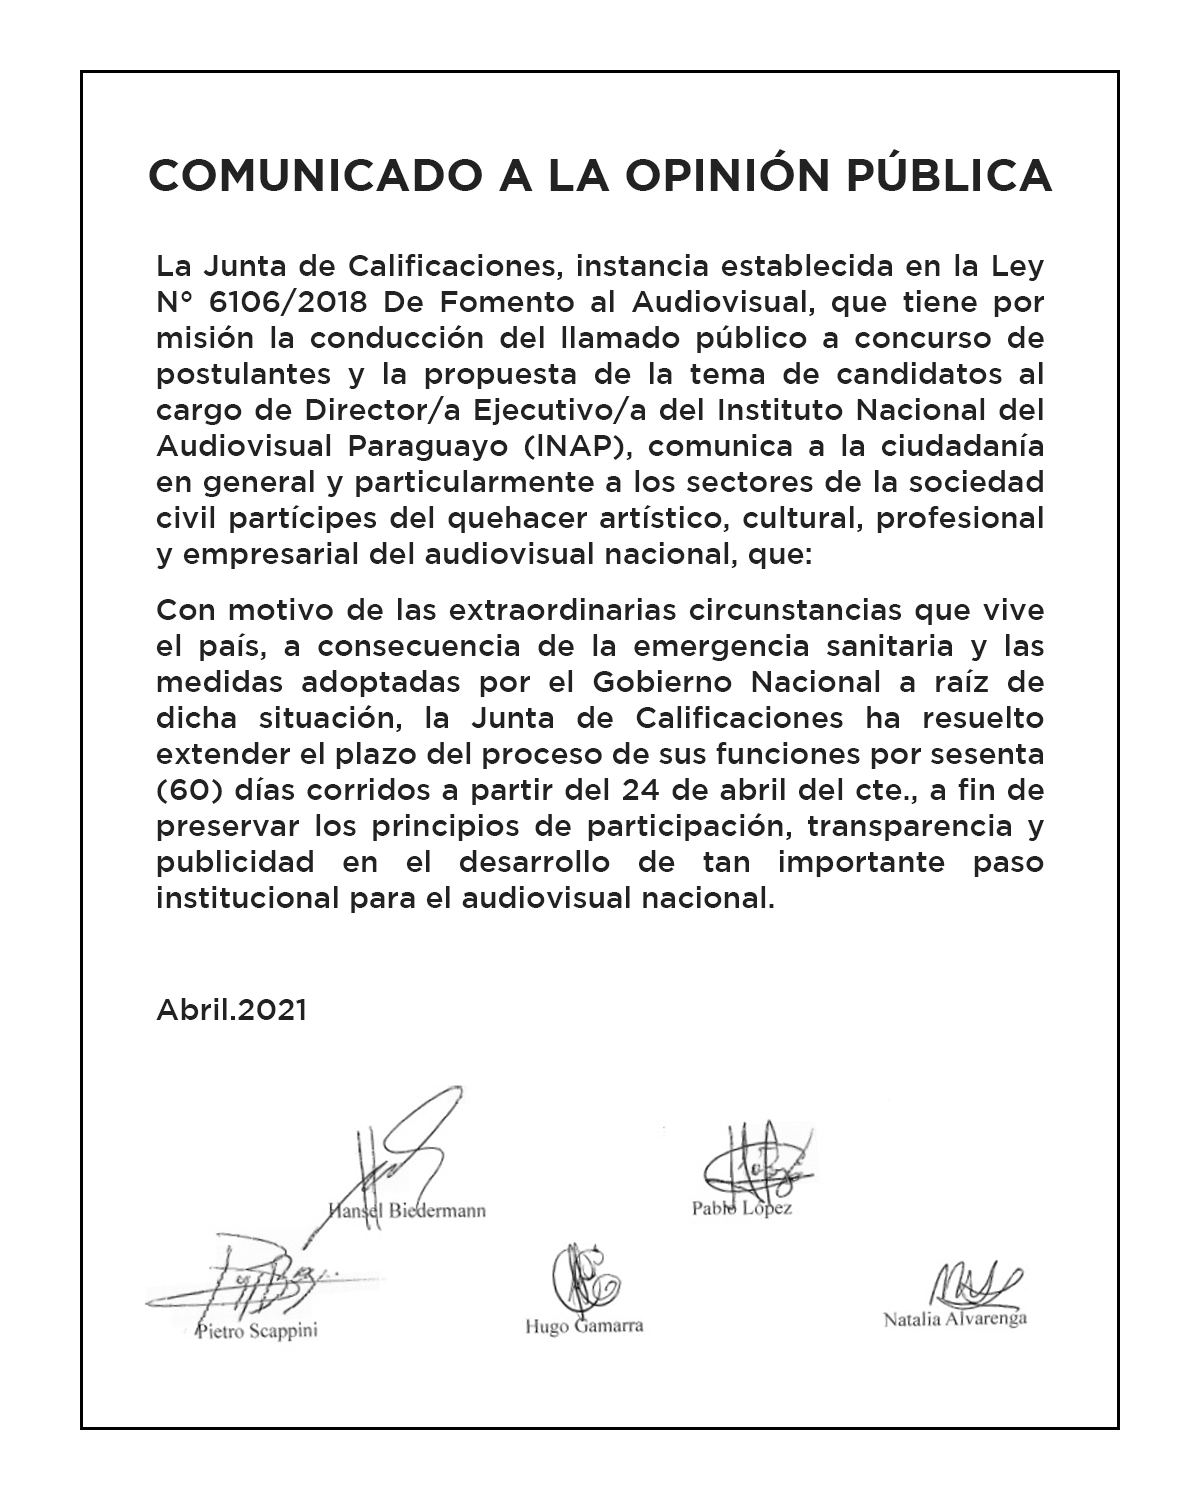 La Junta de Calificaciones del Instituto Nacional del Audiovisual Paraguayo (INAP) informa: imagen